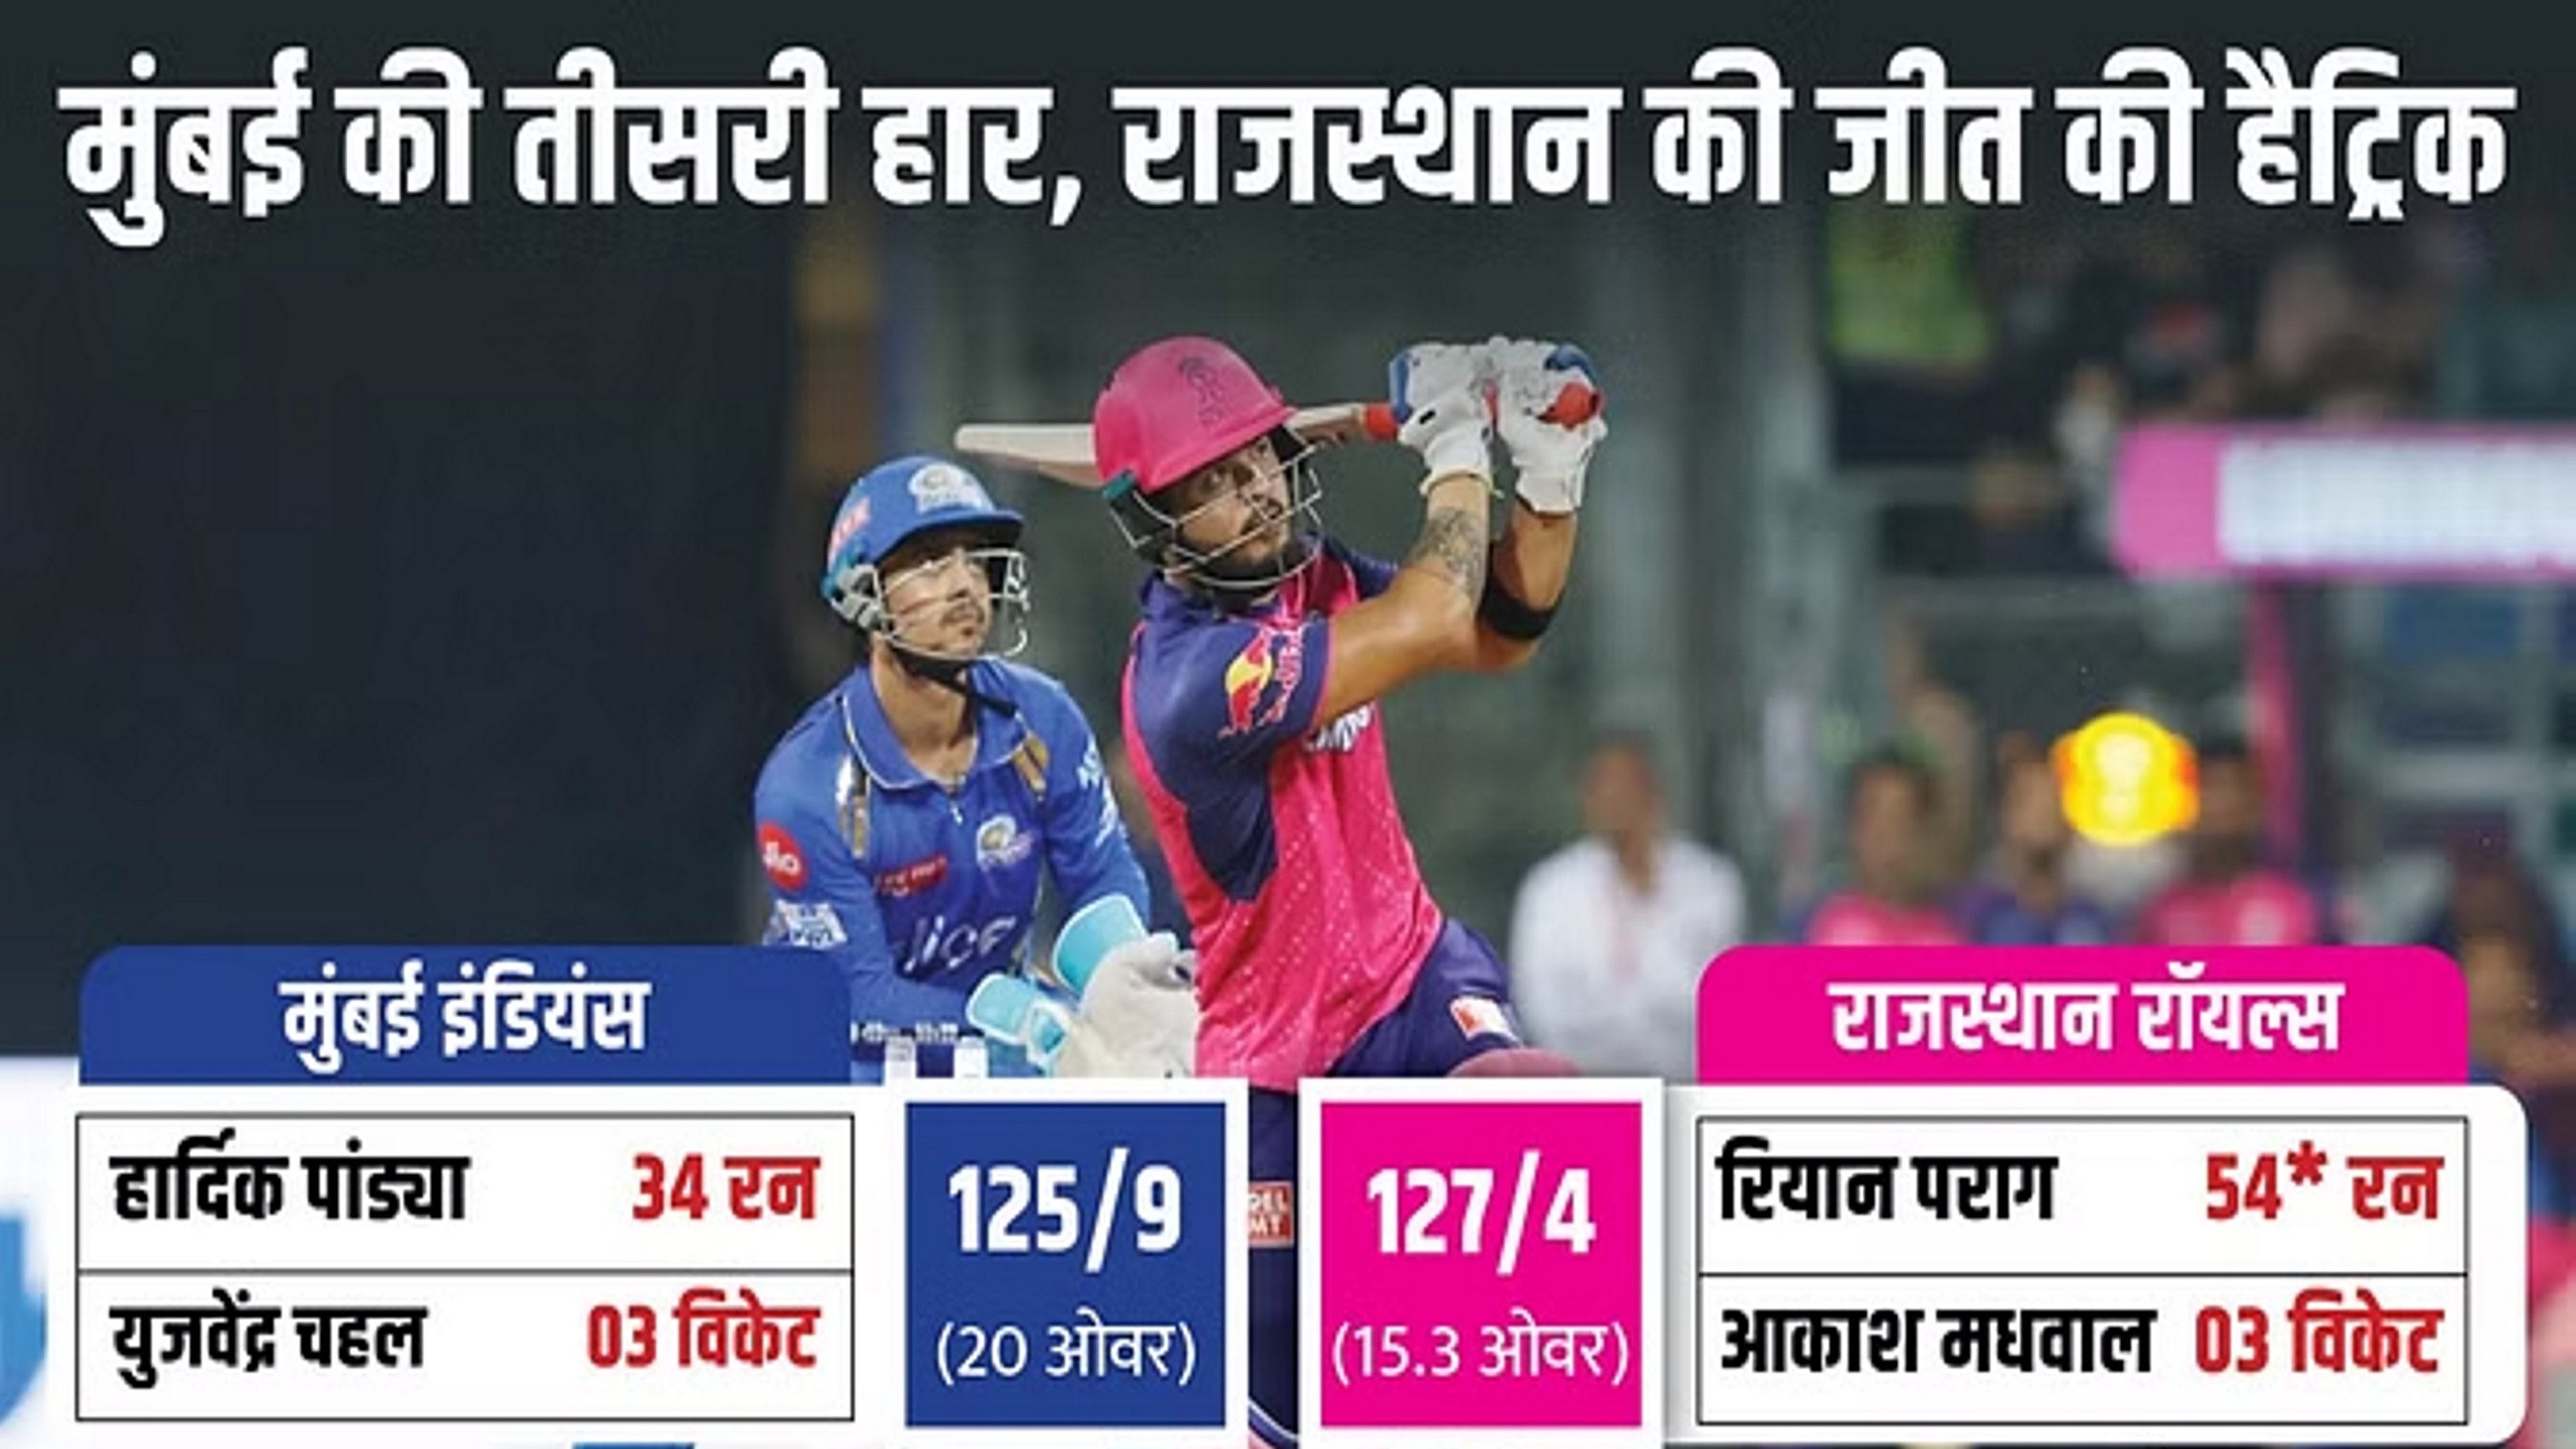 जीत के साथ अंक तालिका में शीर्ष पर पहुंचा राजस्थान